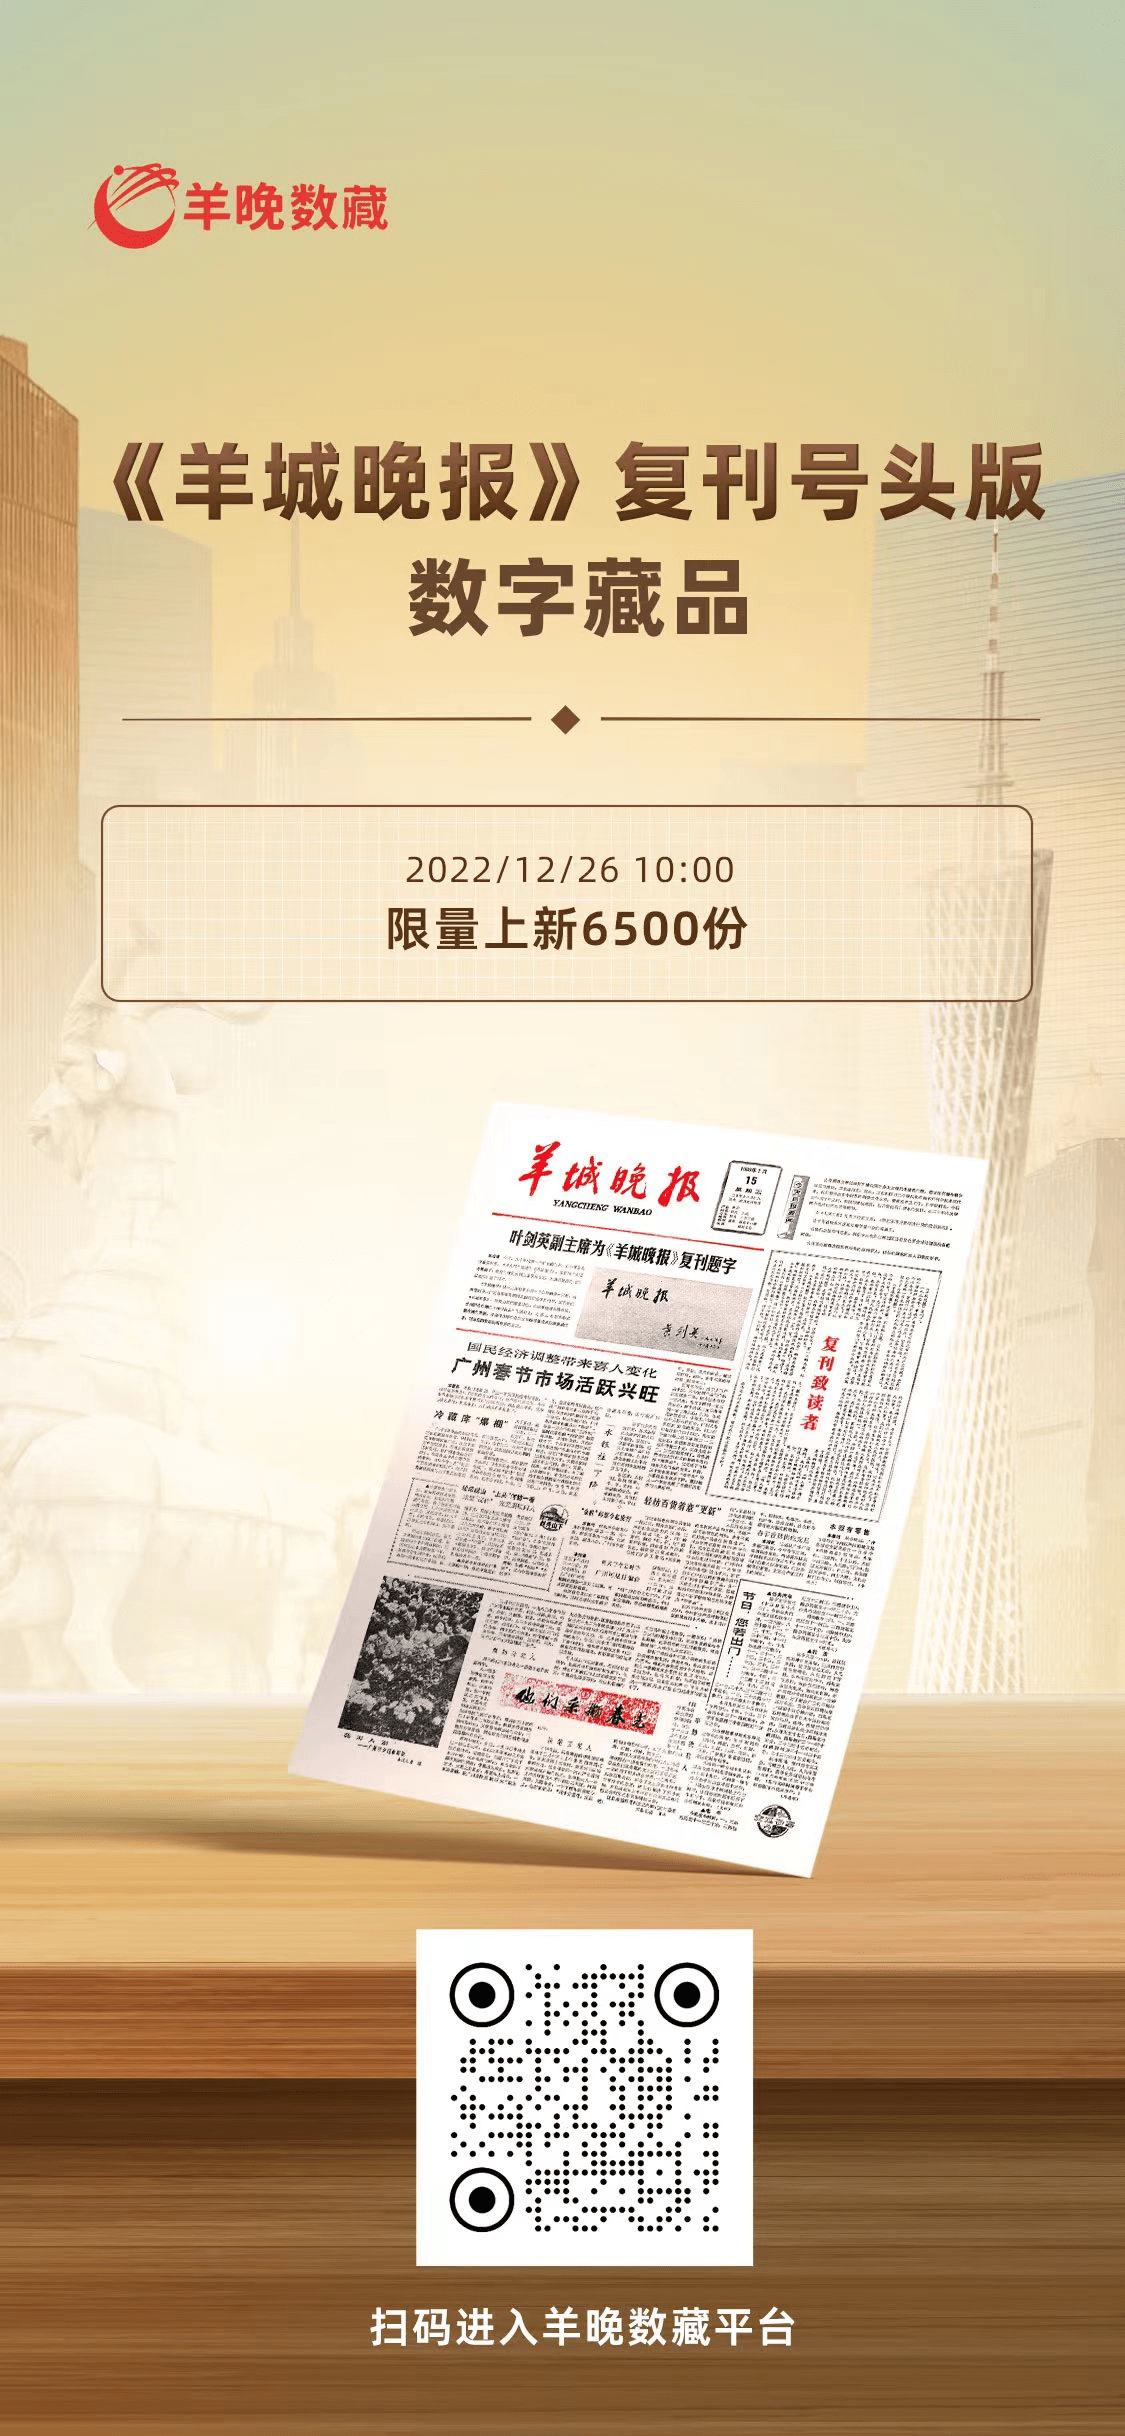 华为手机微信实名认证
:《羊城晚报》复刊号头版数字藏品12月26日上线兑换